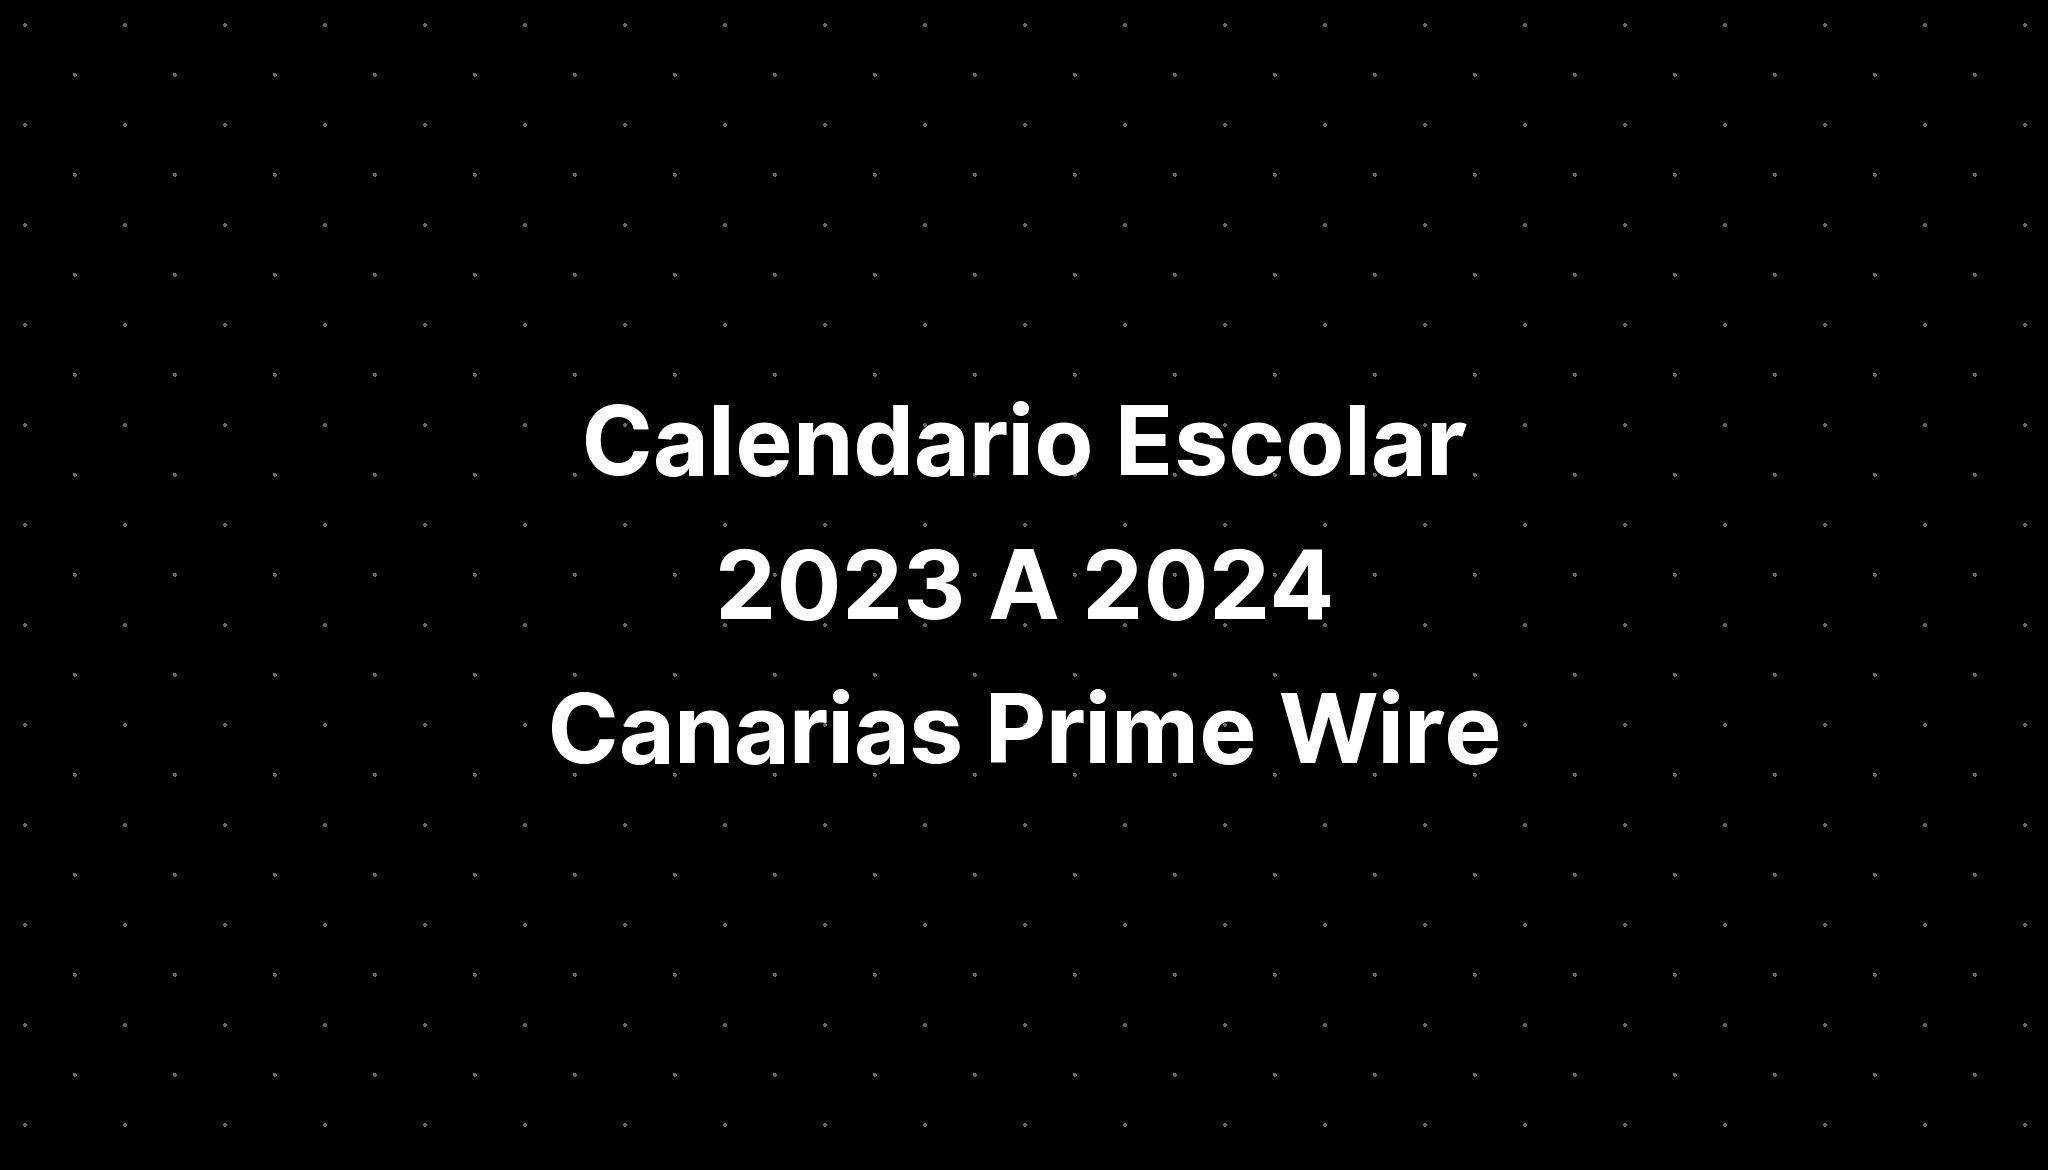 Calendario Escolar 2023 A 2024 Canarias Prime Wire IMAGESEE